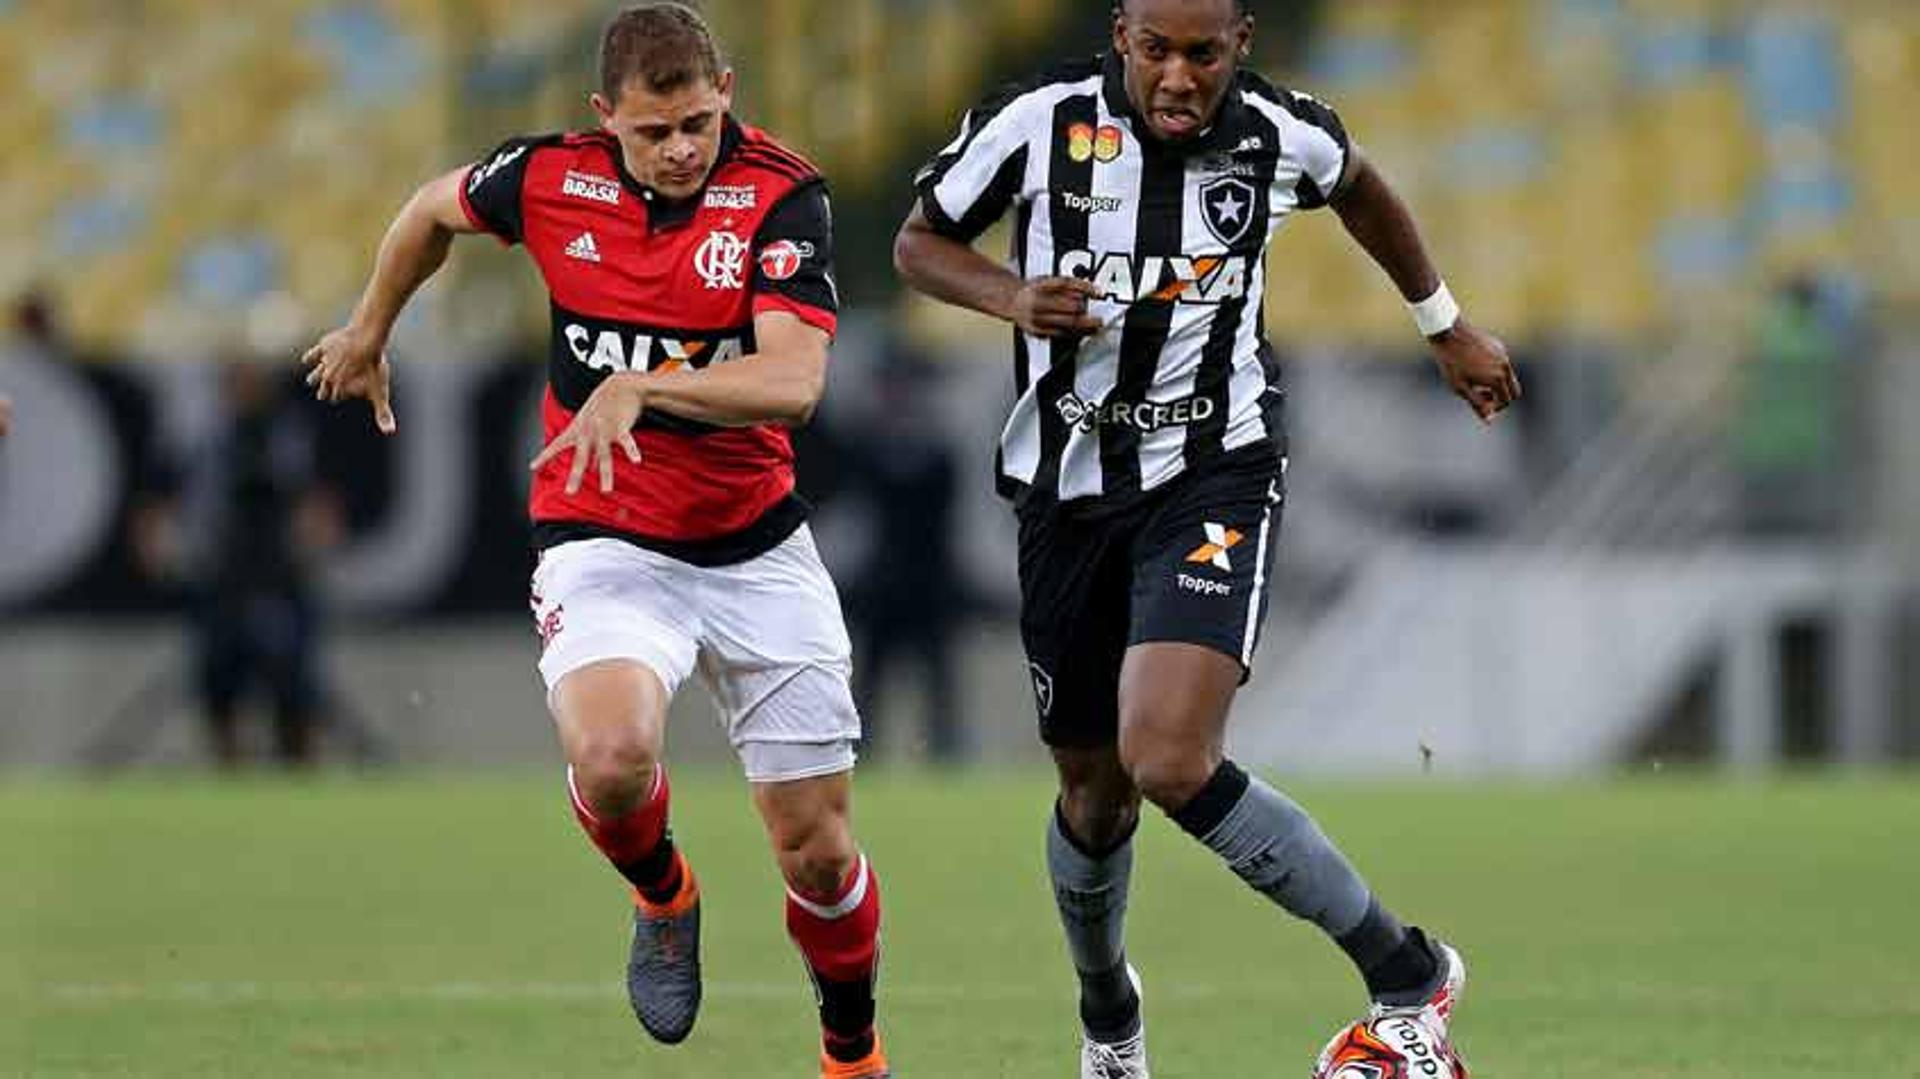 Último encontro entre os times foi na semifinal do Campeonato Carioca: melhor para o Botafogo